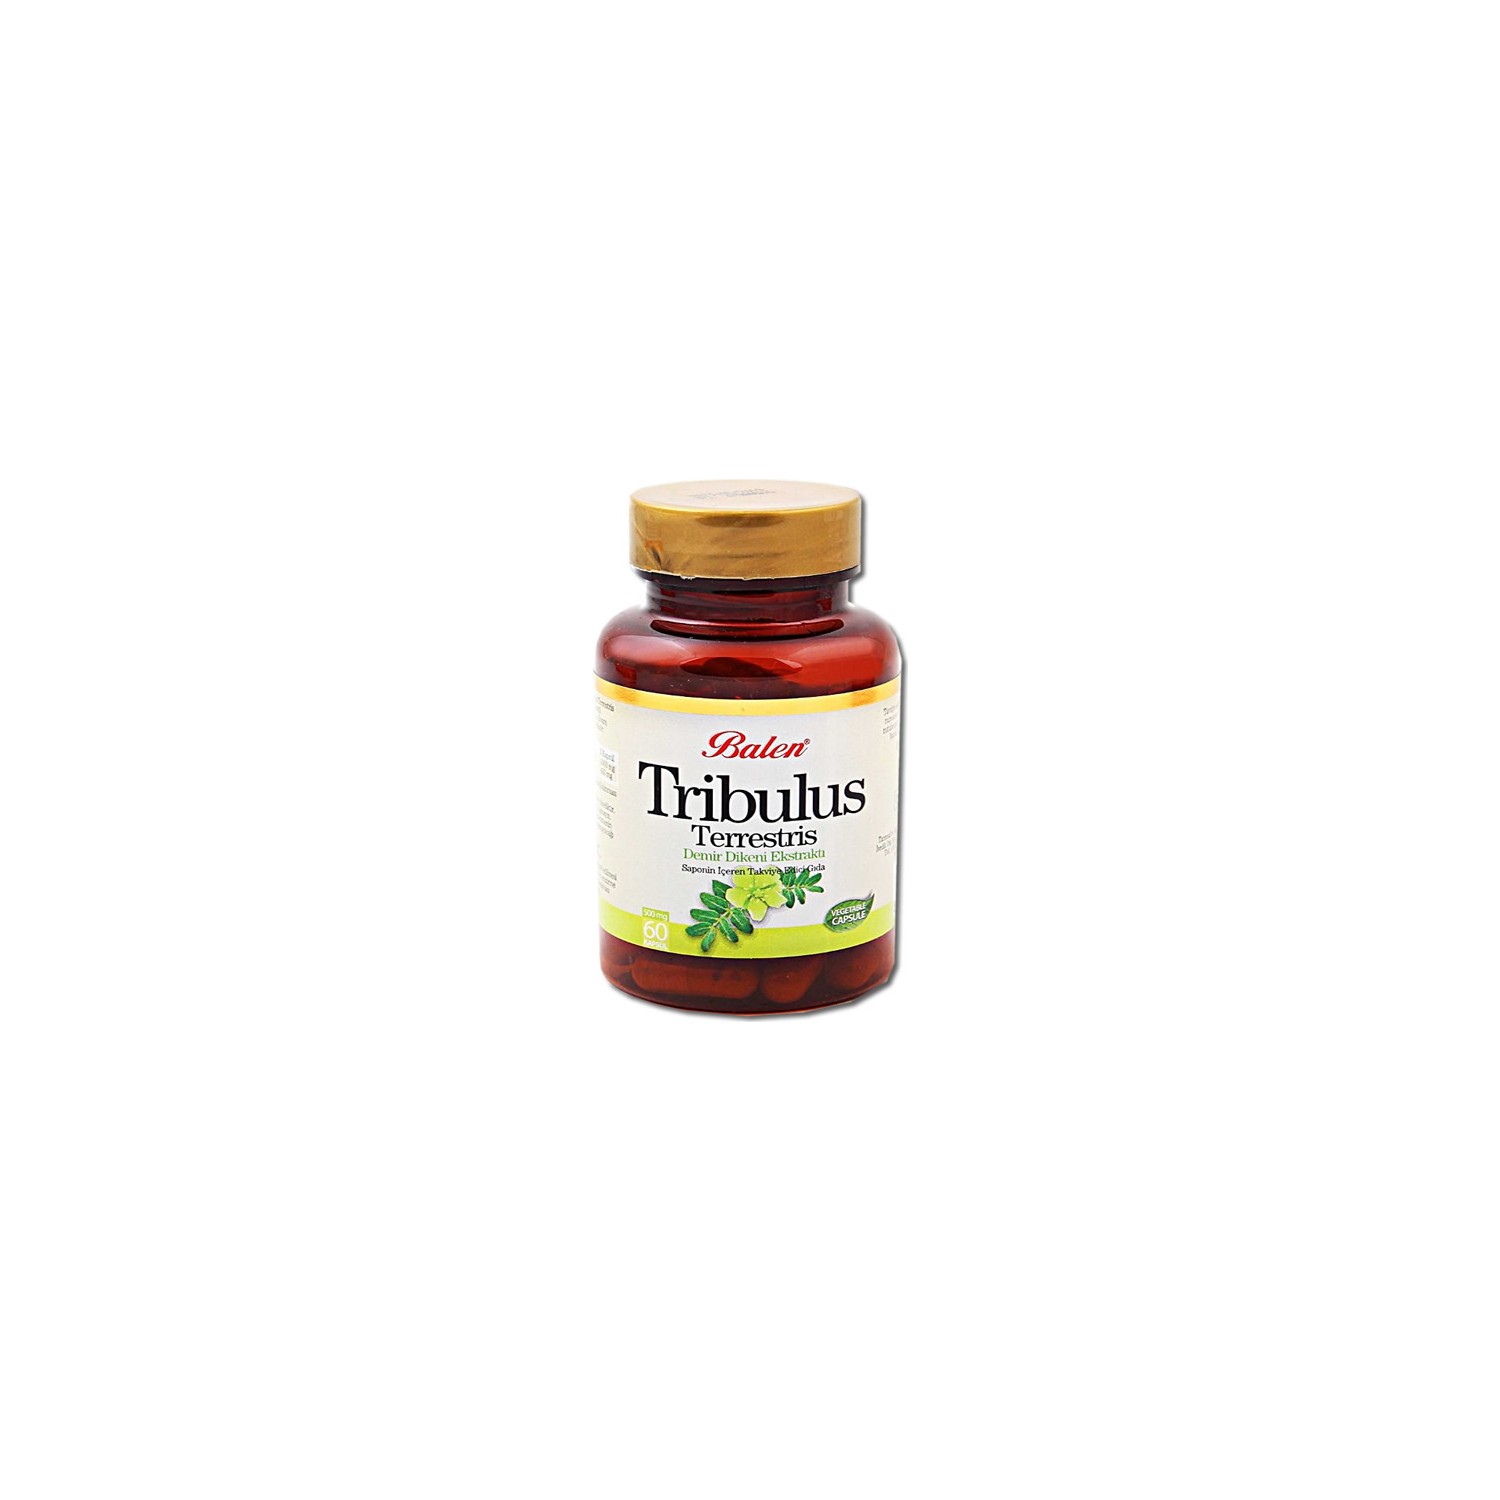 Пищевая добавка Balen Tribulus Terrestris 500 мг, 3 упаковки по 60 капсул